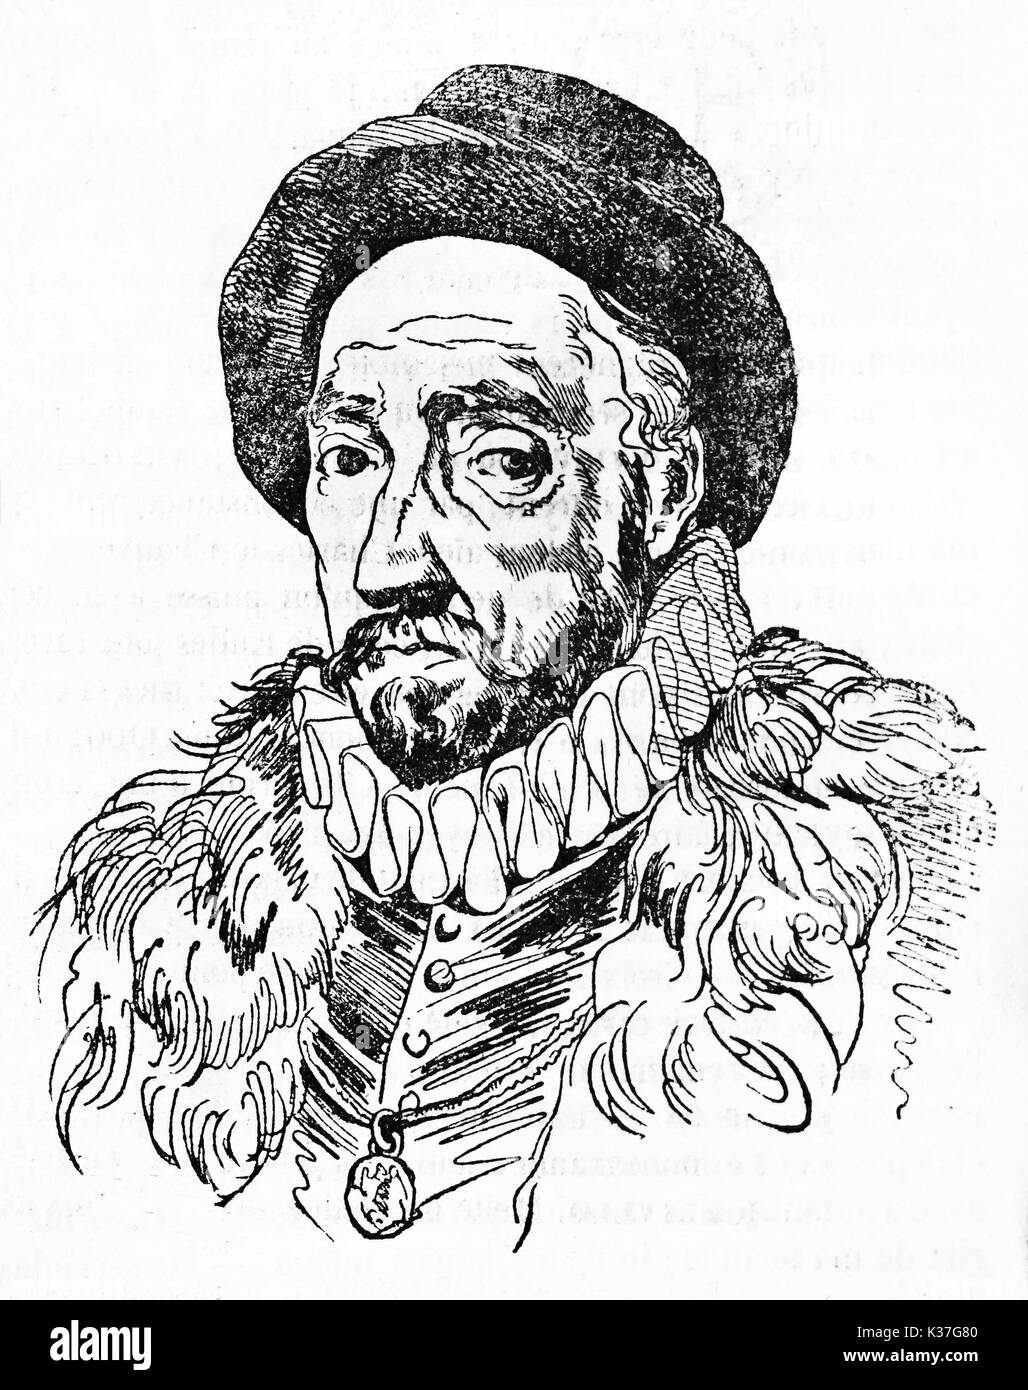 Incisi ritratto di Michel Eyquem de Montaigne (1533 - 1592), francese filosofo rinascimentale. Vecchia illustrazione di Gigouc, pubblicato il Magasin pittoresco, Parigi, 1834 Foto Stock